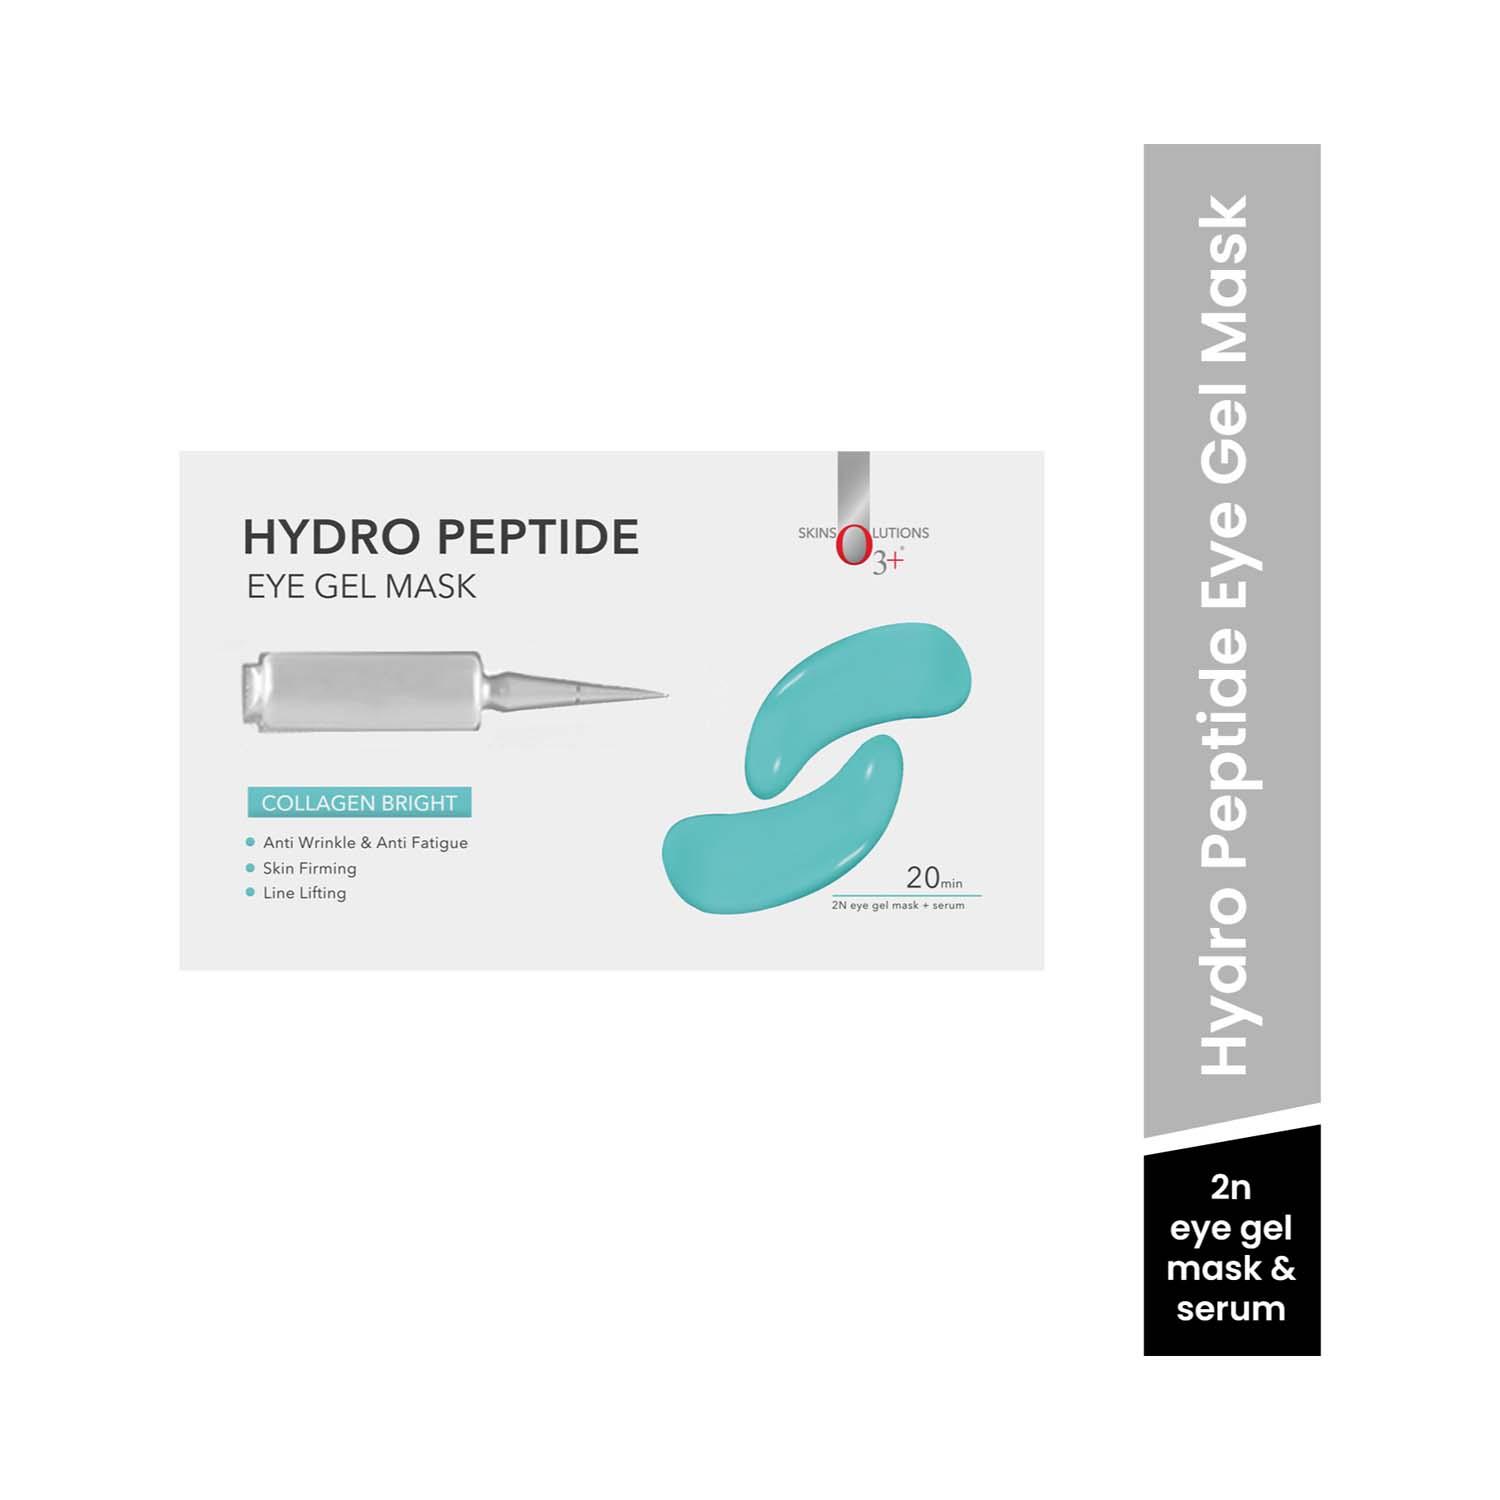 O3+ Hydro Peptide Eye Gel Mask (10g)